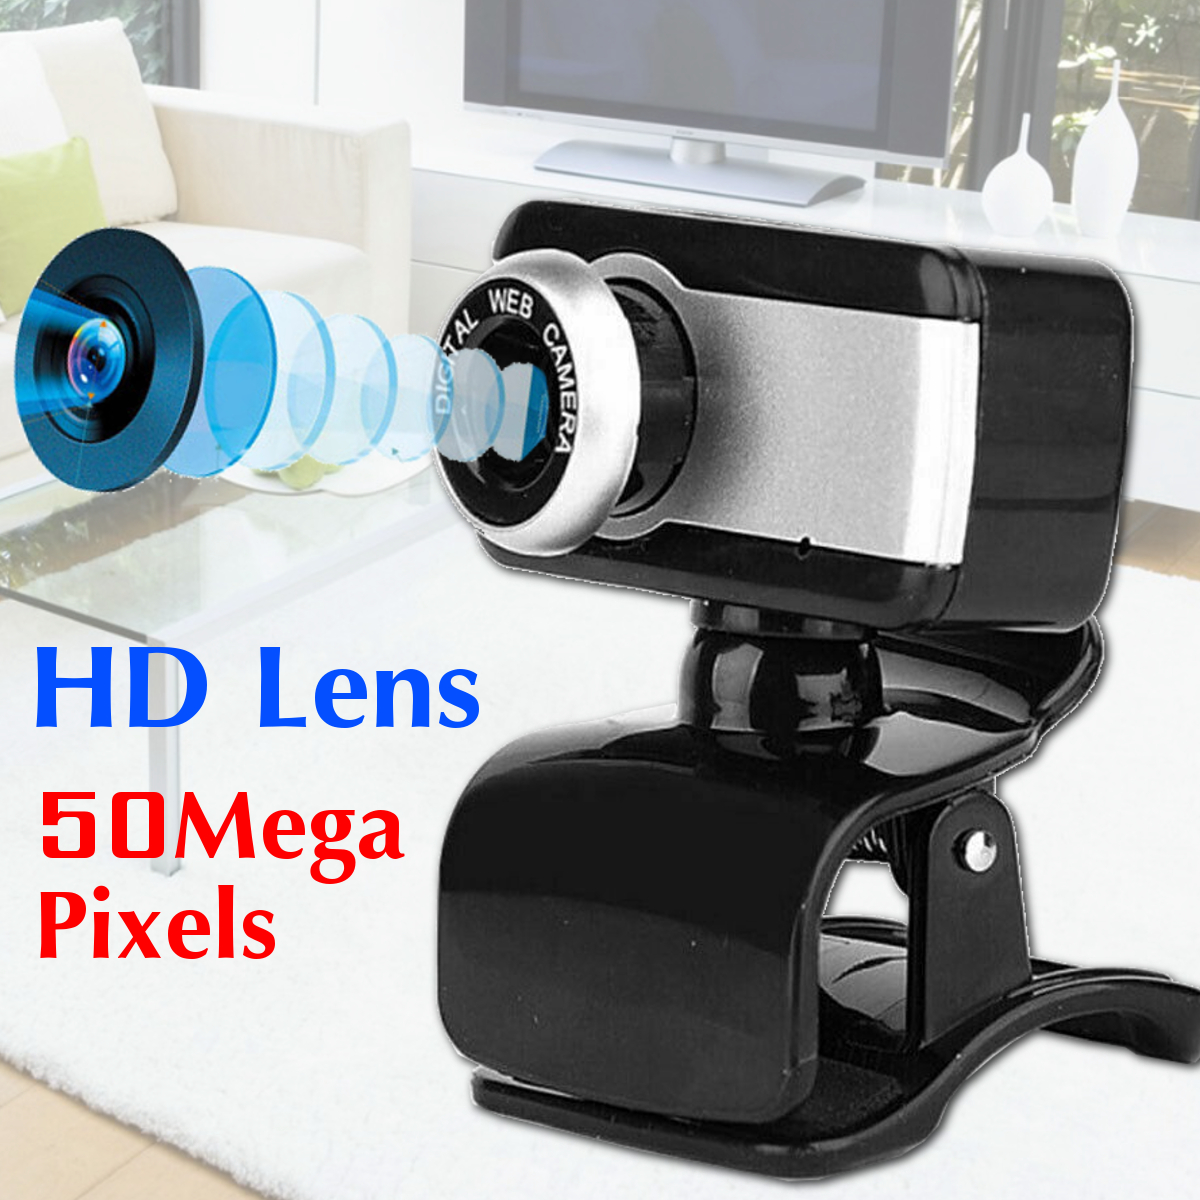 720P-HD-Webcam-CMOS-50-Mega-Pixels-USB20-Web-Camera-Built-in-Microphone-Camera-for-Desktop-Computer--1769965-2